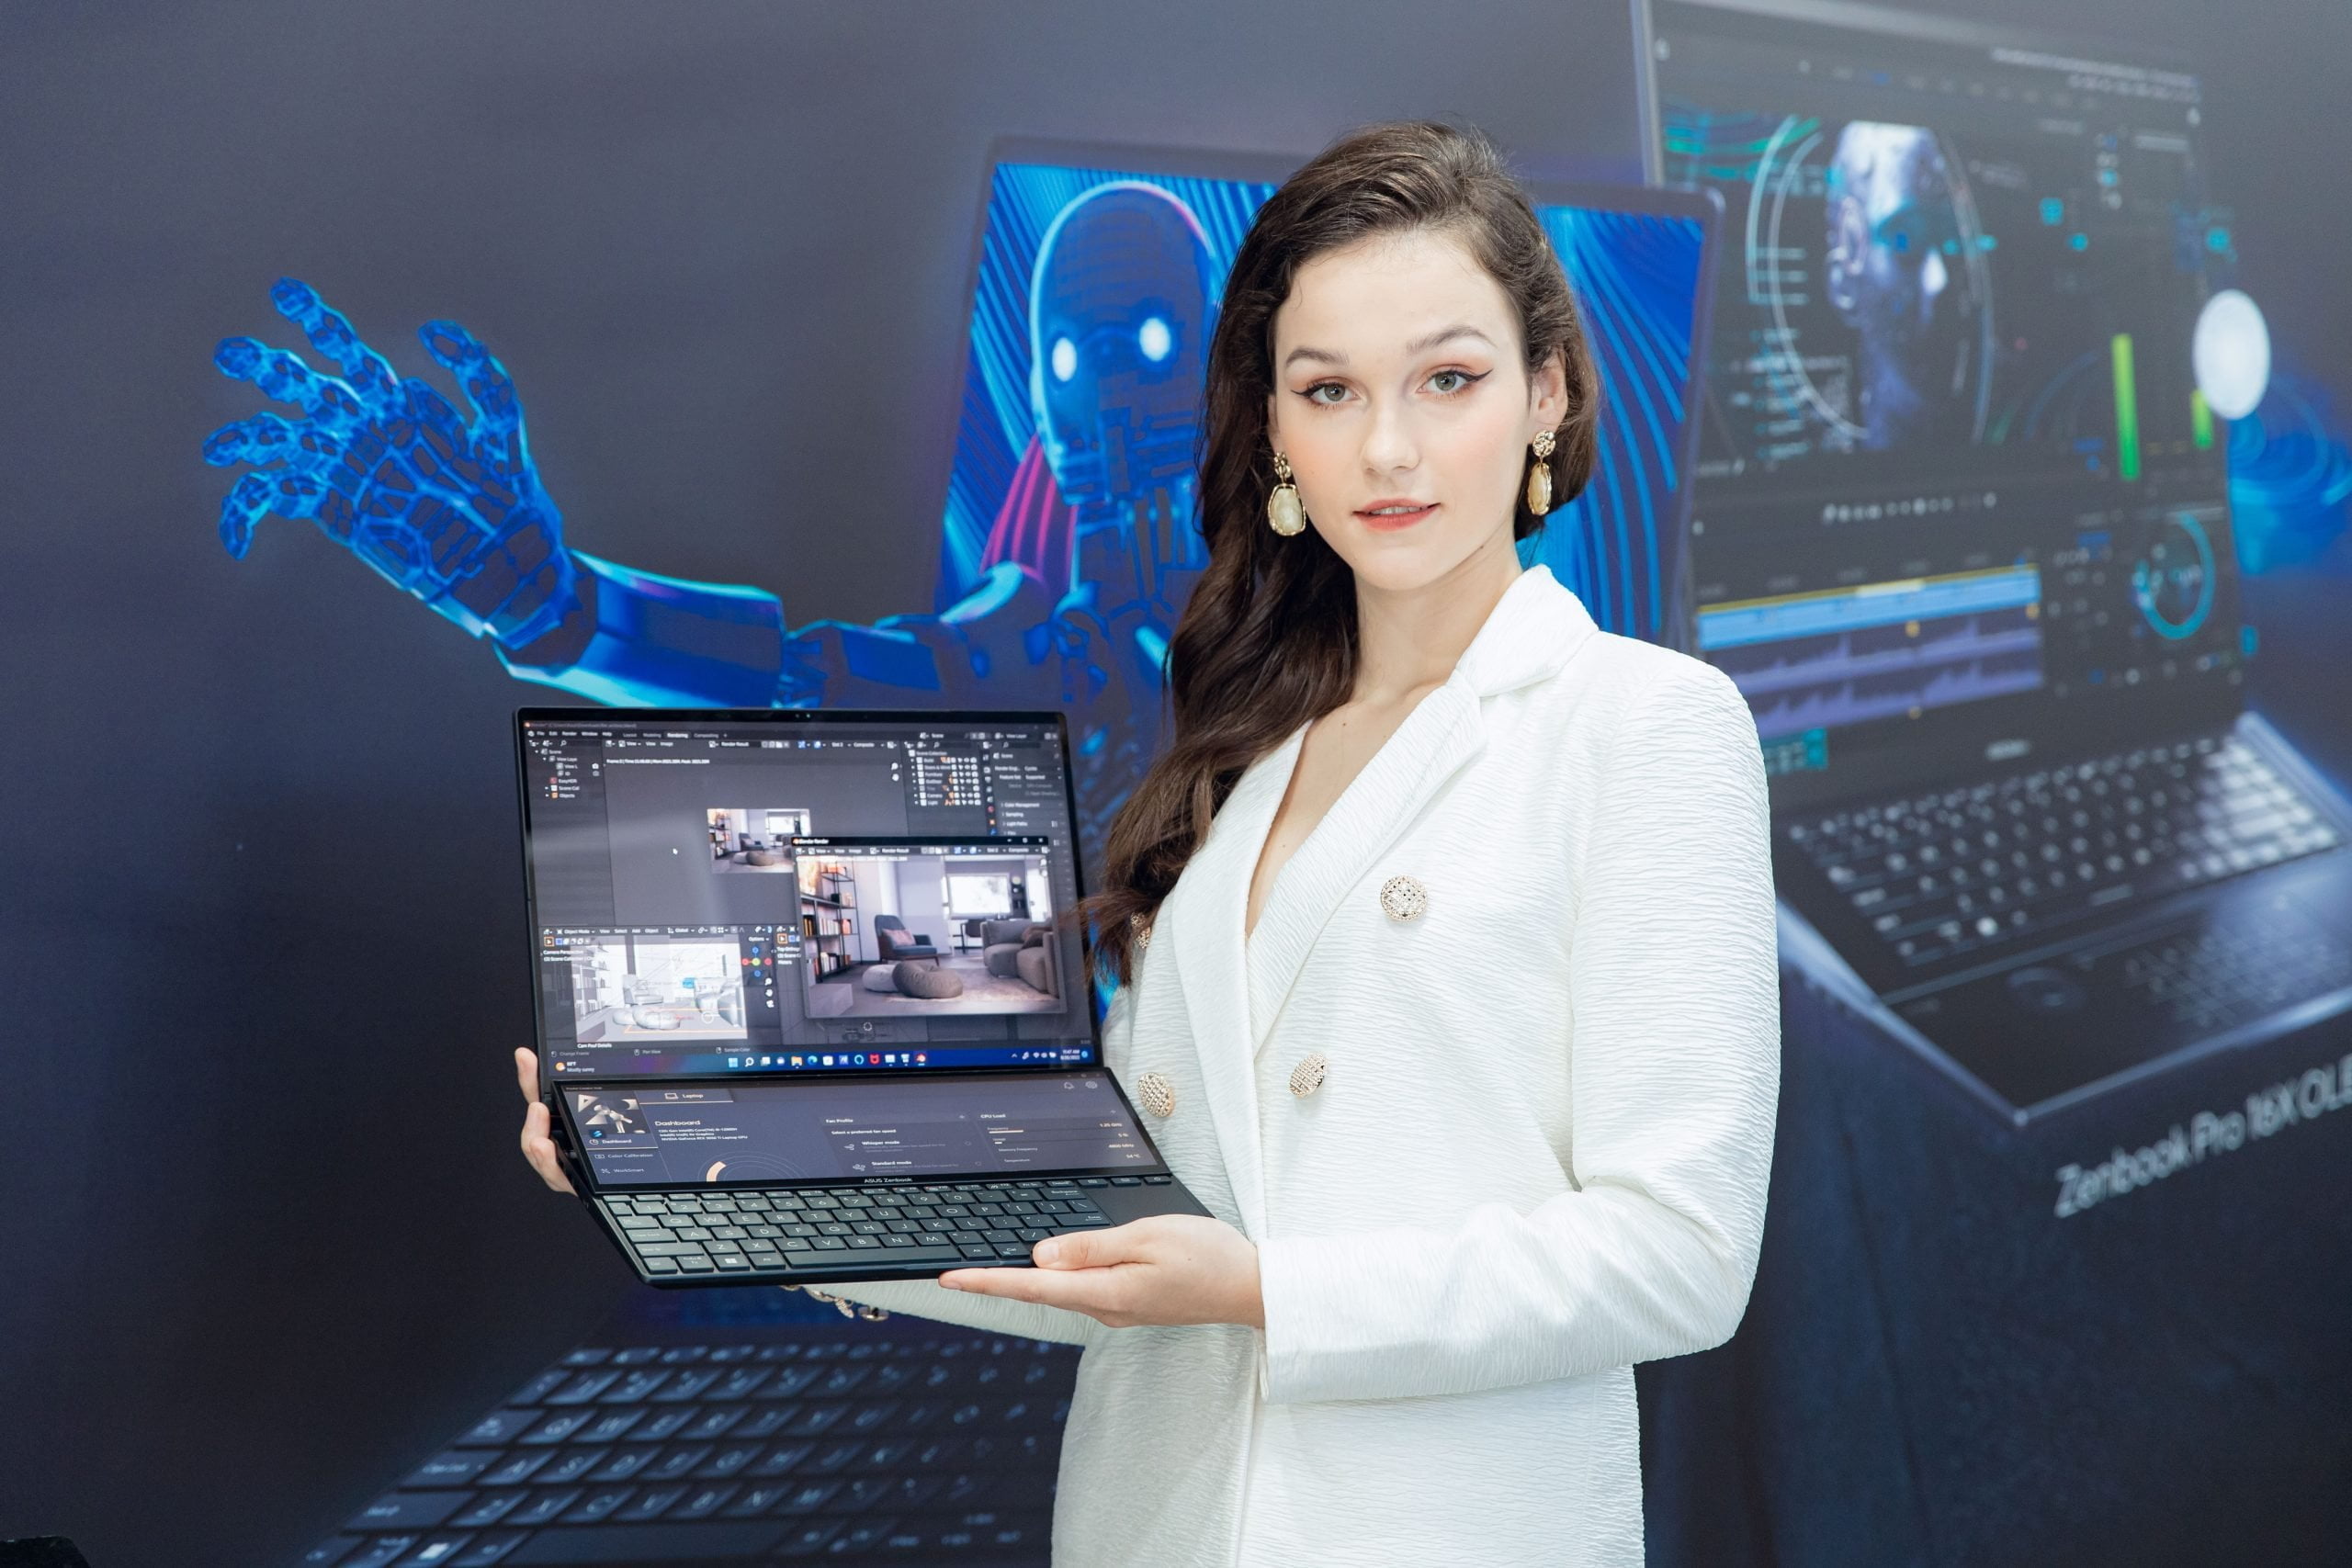 [PR] ASUS trình làng siêu laptop hai màn hình ZenBook Pro 14 Duo OLED dành cho nhà sáng tạo nội dung, giá từ 56.990.000 đồng - Image 7